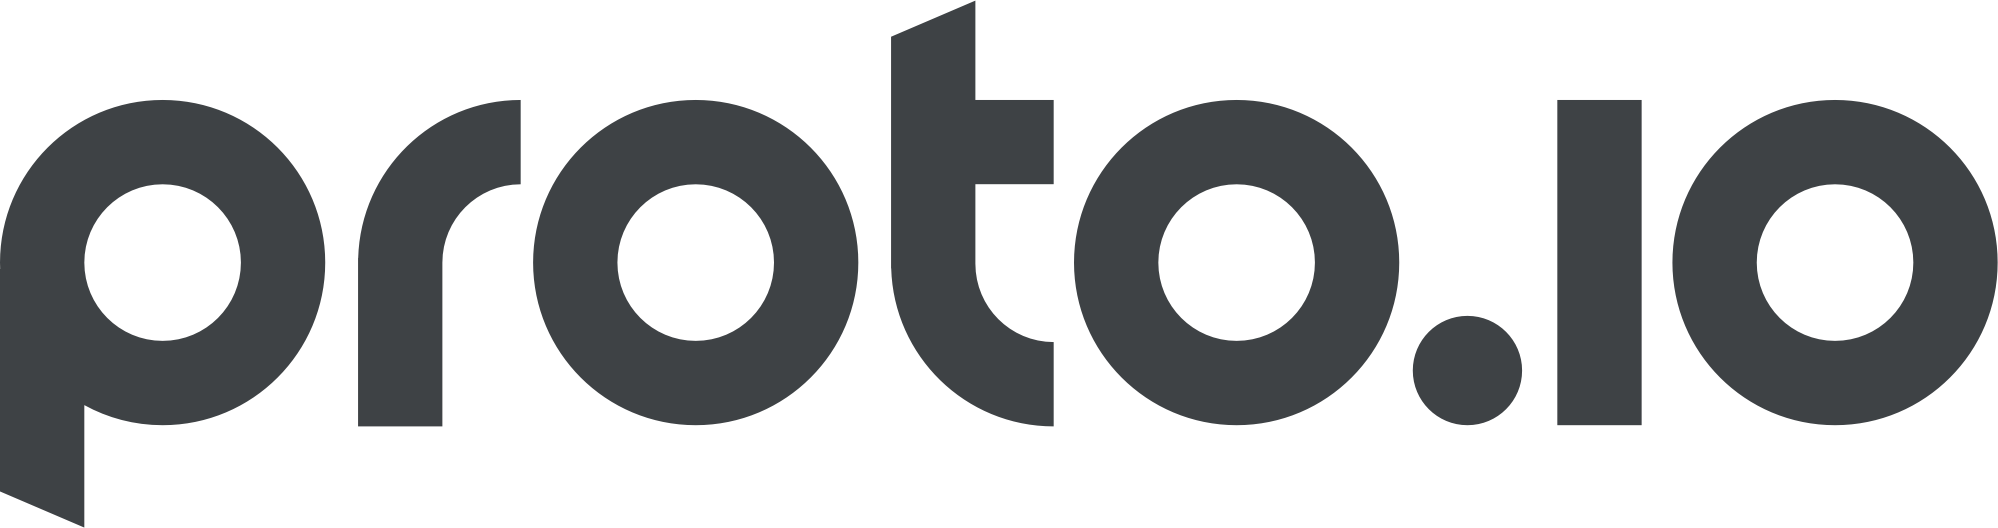 Proto Logo - Press Kit - Proto.io